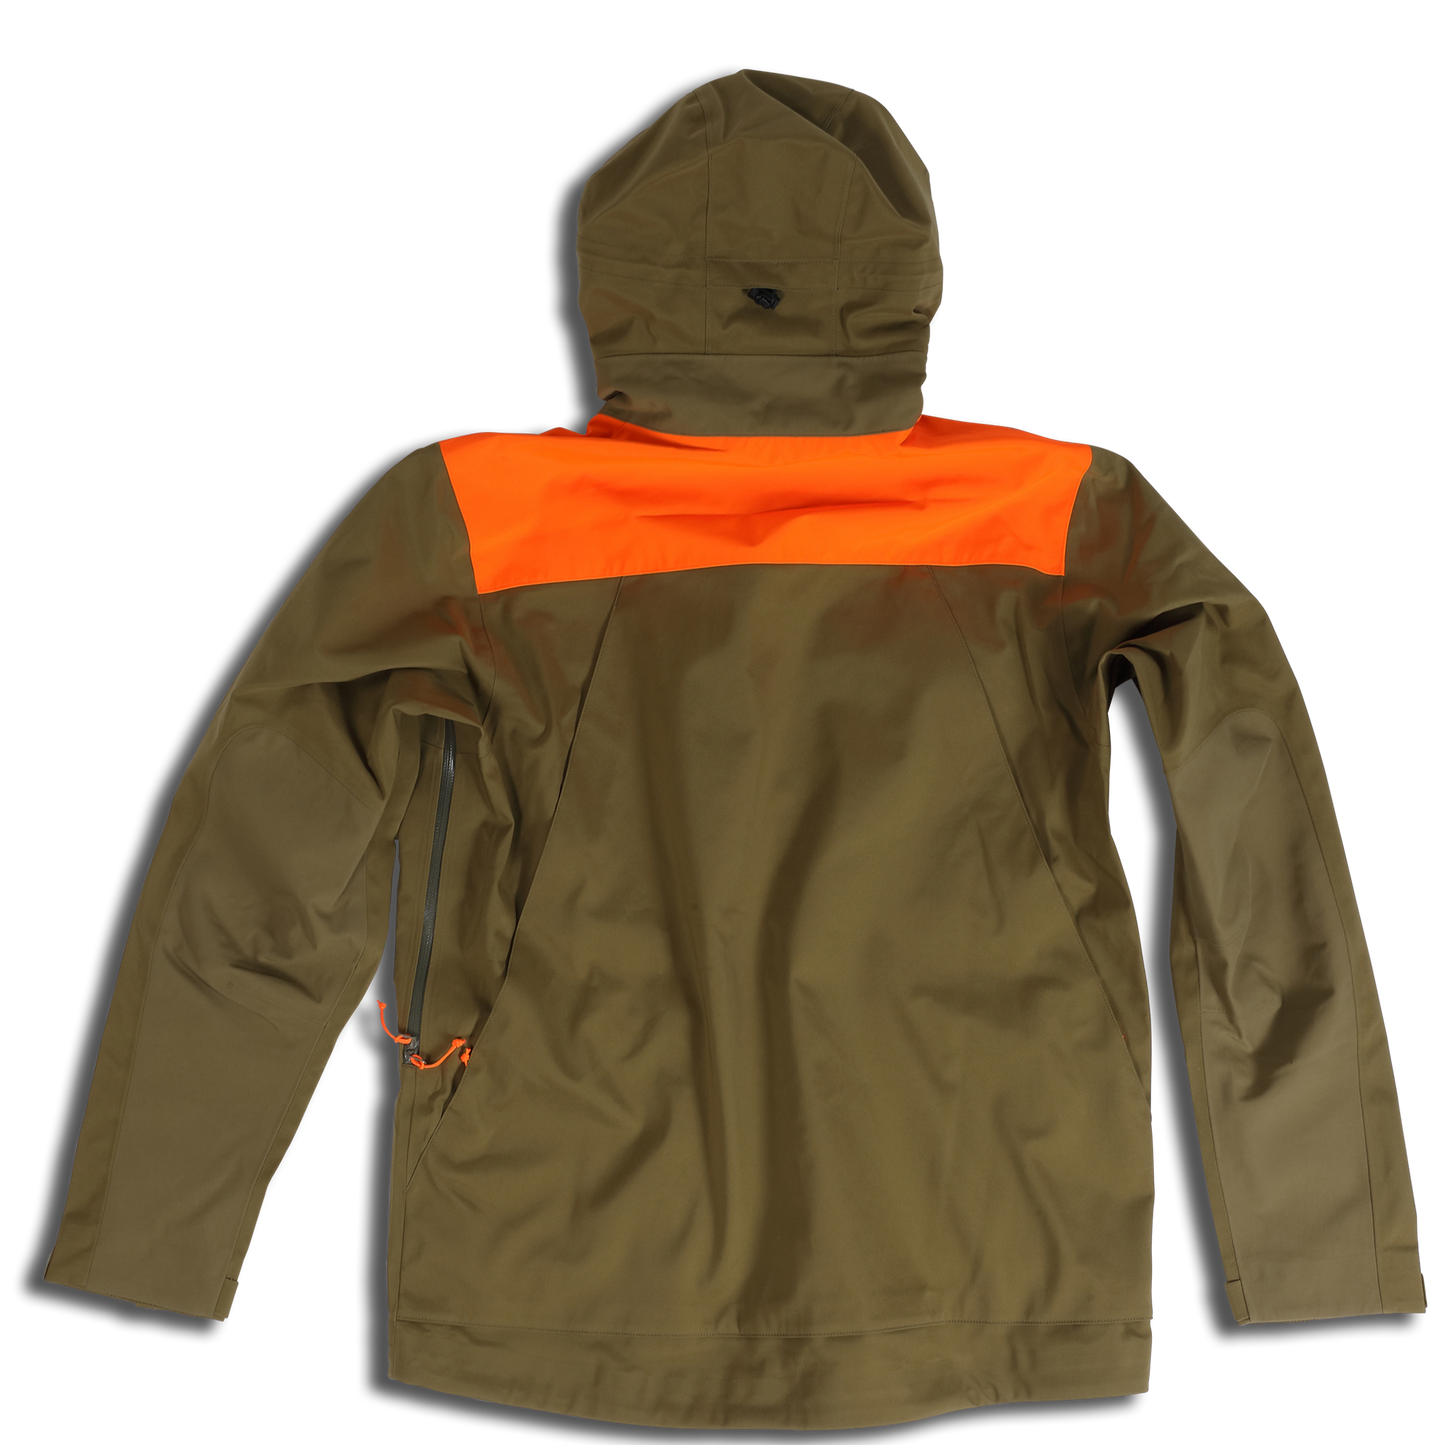 ORVIS Toughshell Waterproof Upland Jacket